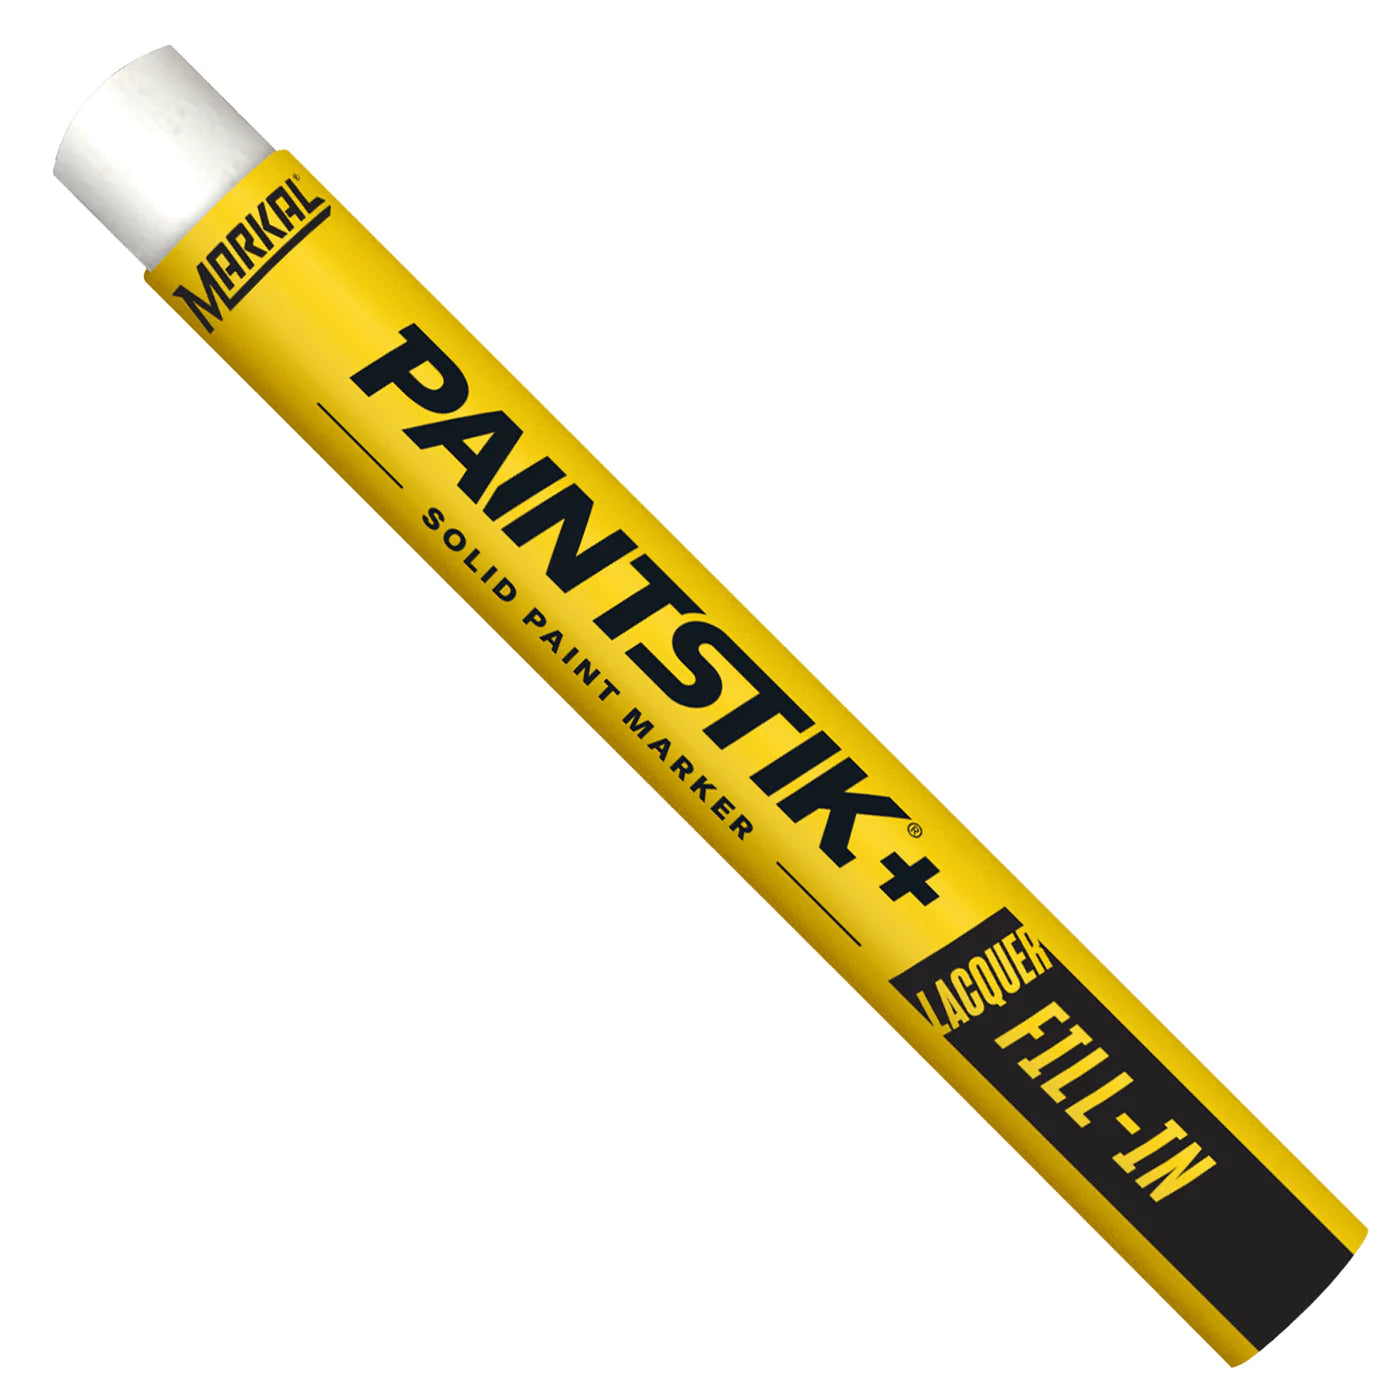 PaintStick+ avec LACQUER FILL-IN - Color Stick pour remplir l'écriture gravée